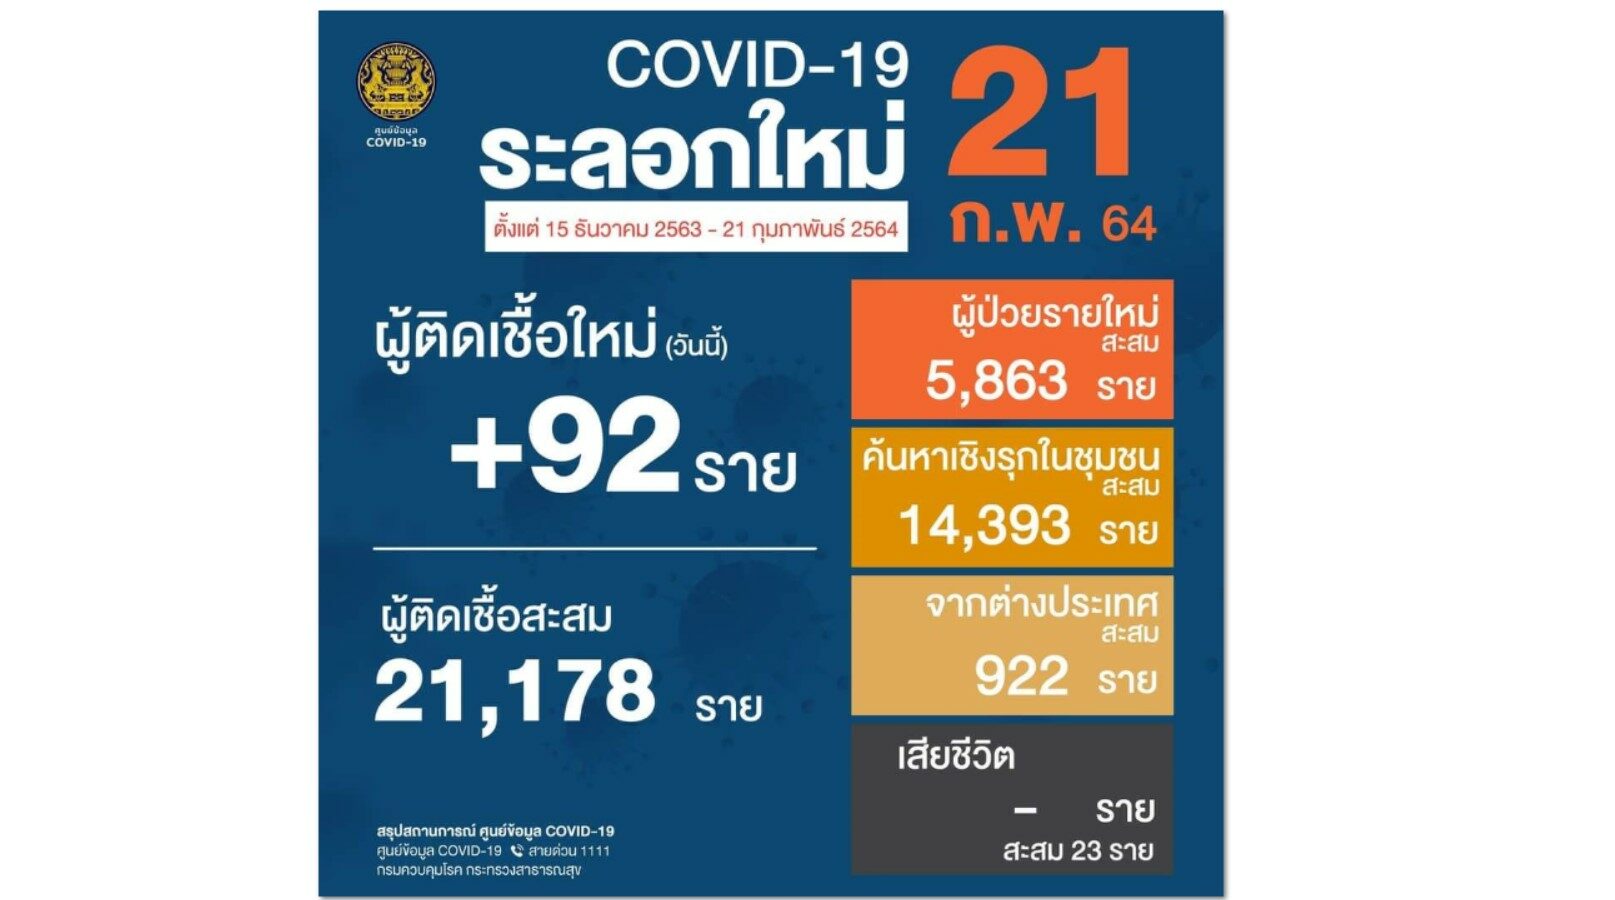 วันนี้ไทยป่วยโควิดใหม่ 92 ราย ขยับขึ้น 113 ของโลก ทั่วโลกติดเชื้อเพิ่ม 372,396 ราย